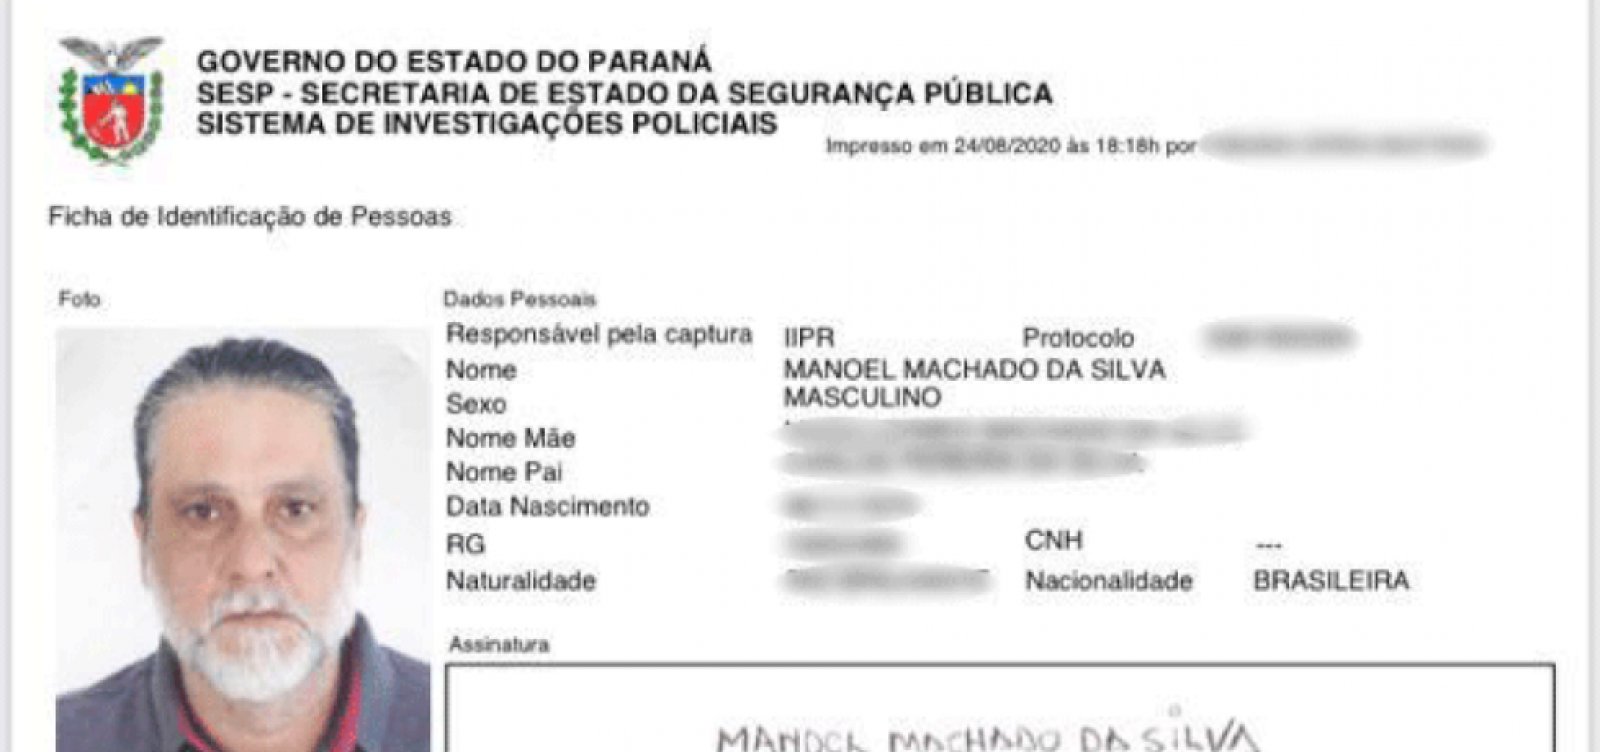 Acusado de assassinar ator Rafael Miguel e os pais dele fez RG falso no Paraná